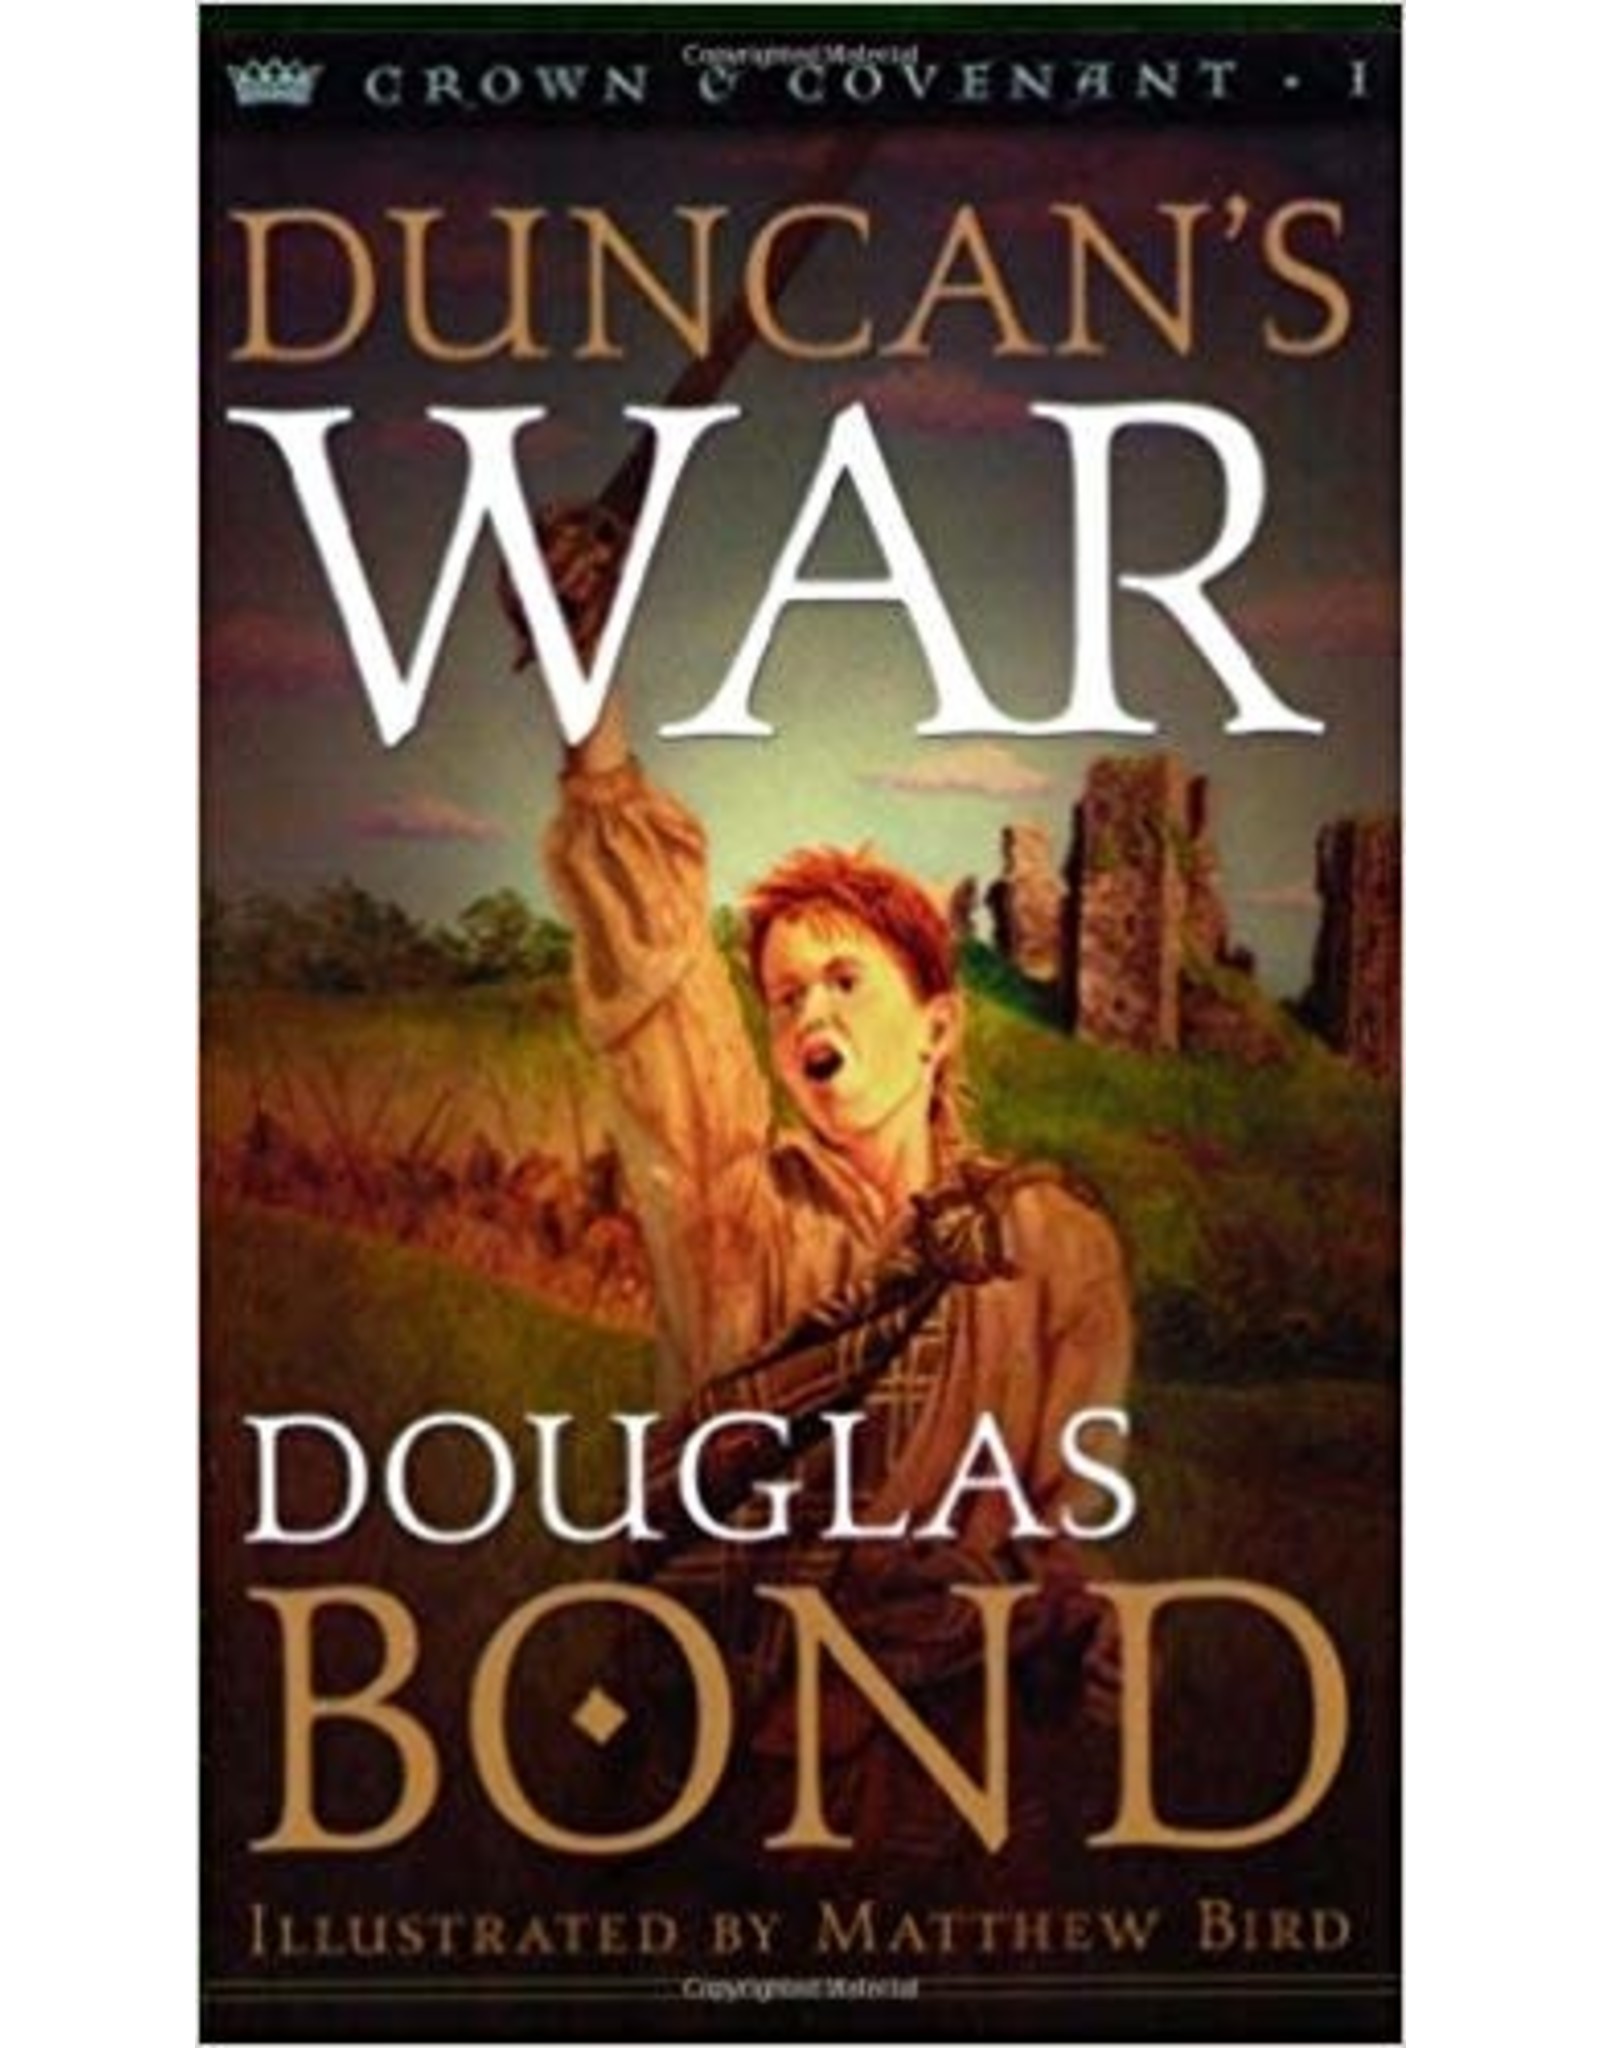 Douglas Bond Duncan's War - Crown and Covenant Trilogy - Book 1